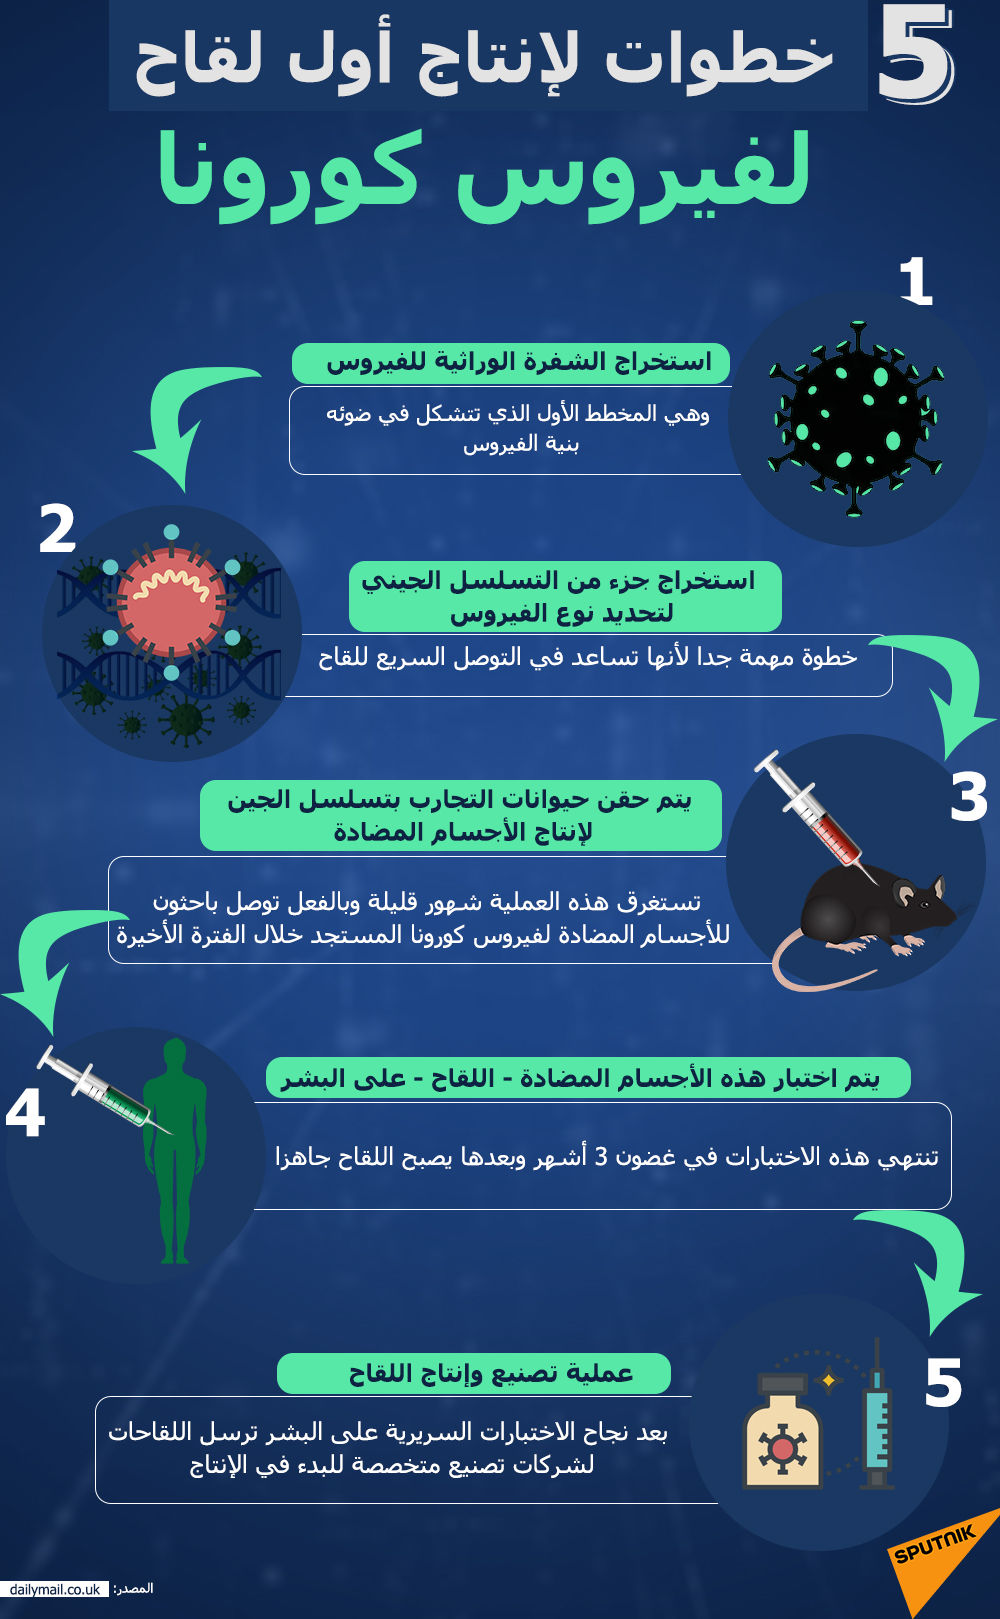 5 خطوات لإنتاج أول لقاح لفيروس كورونا - سبوتنيك عربي